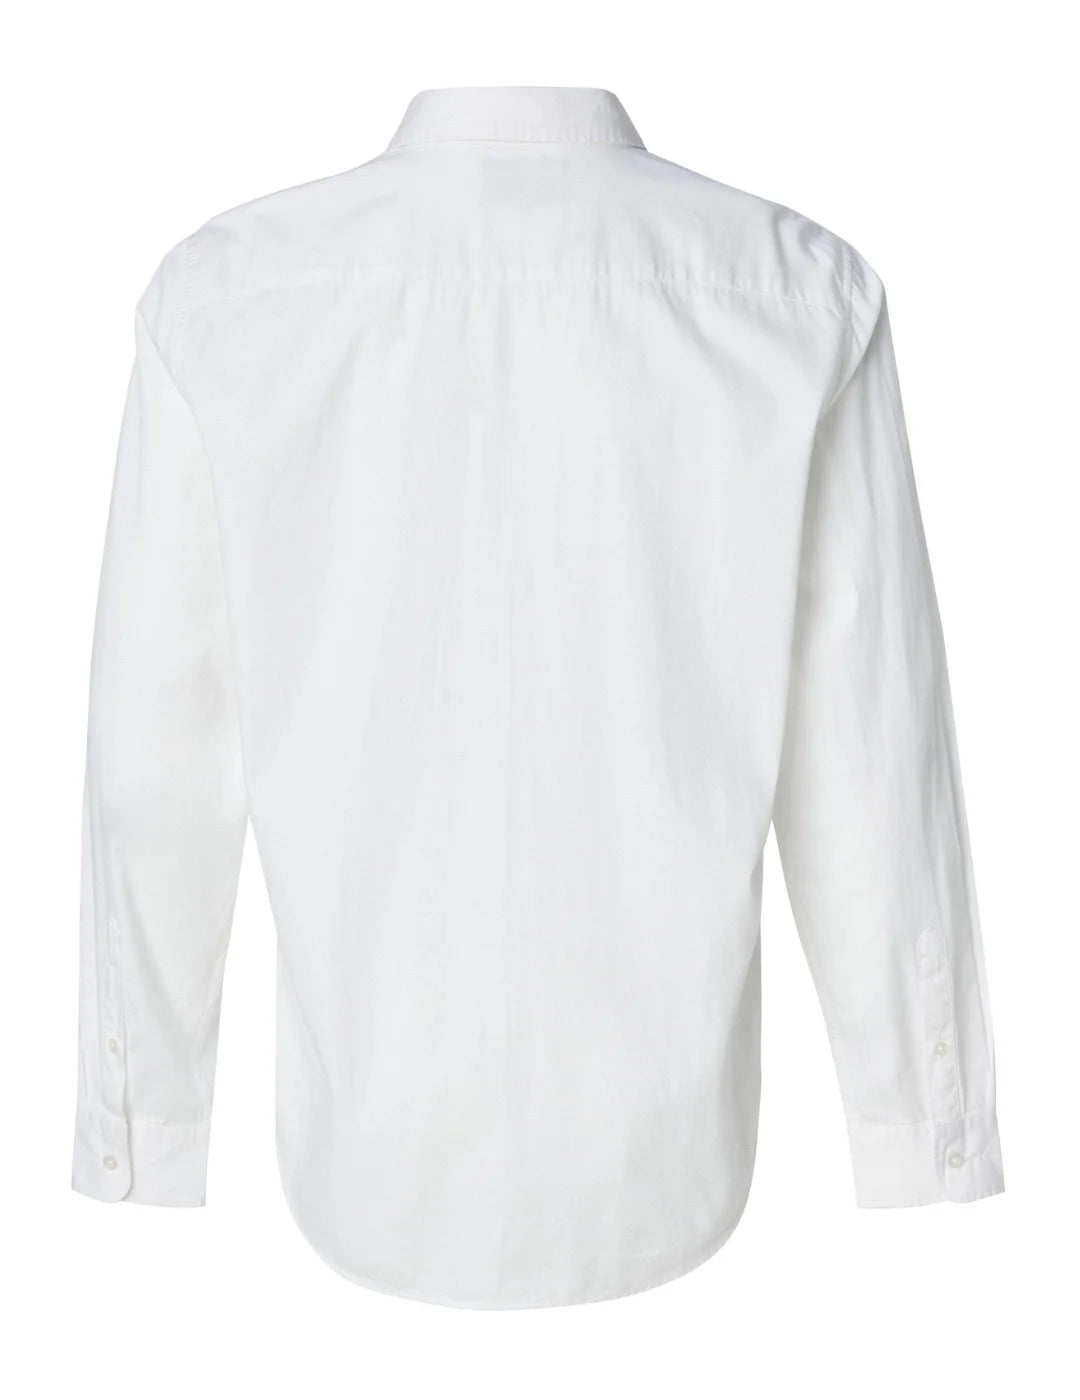 Camisa Blanca Manga Larga Lisa Salsa | Bicos de Fío